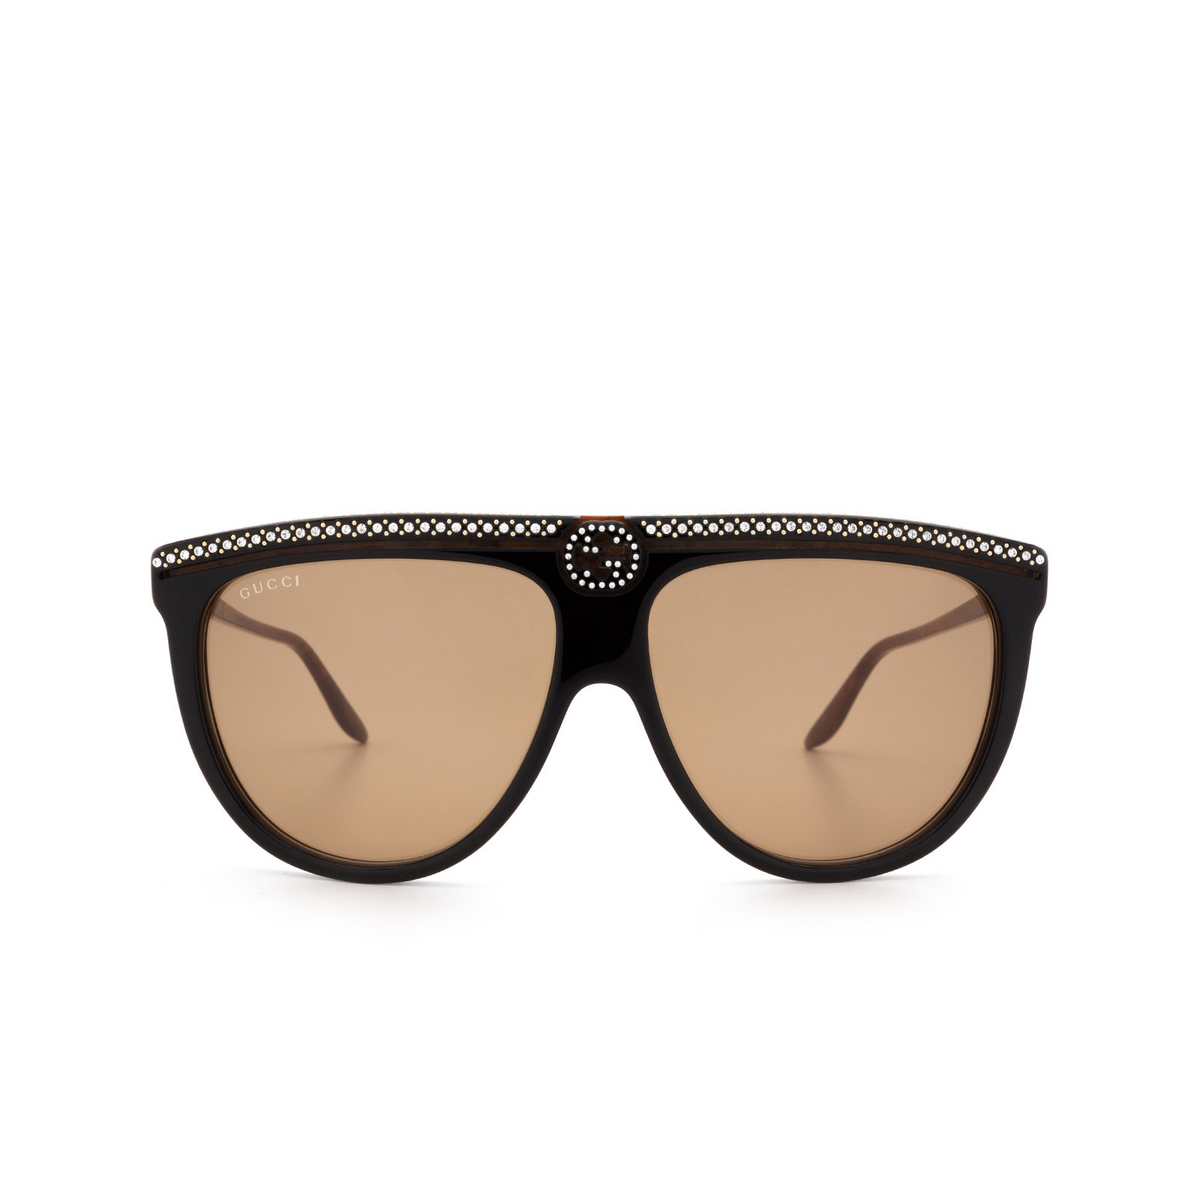 Gucci® Aviator Sunglasses: GG0732S color Black 005 - 1/3.